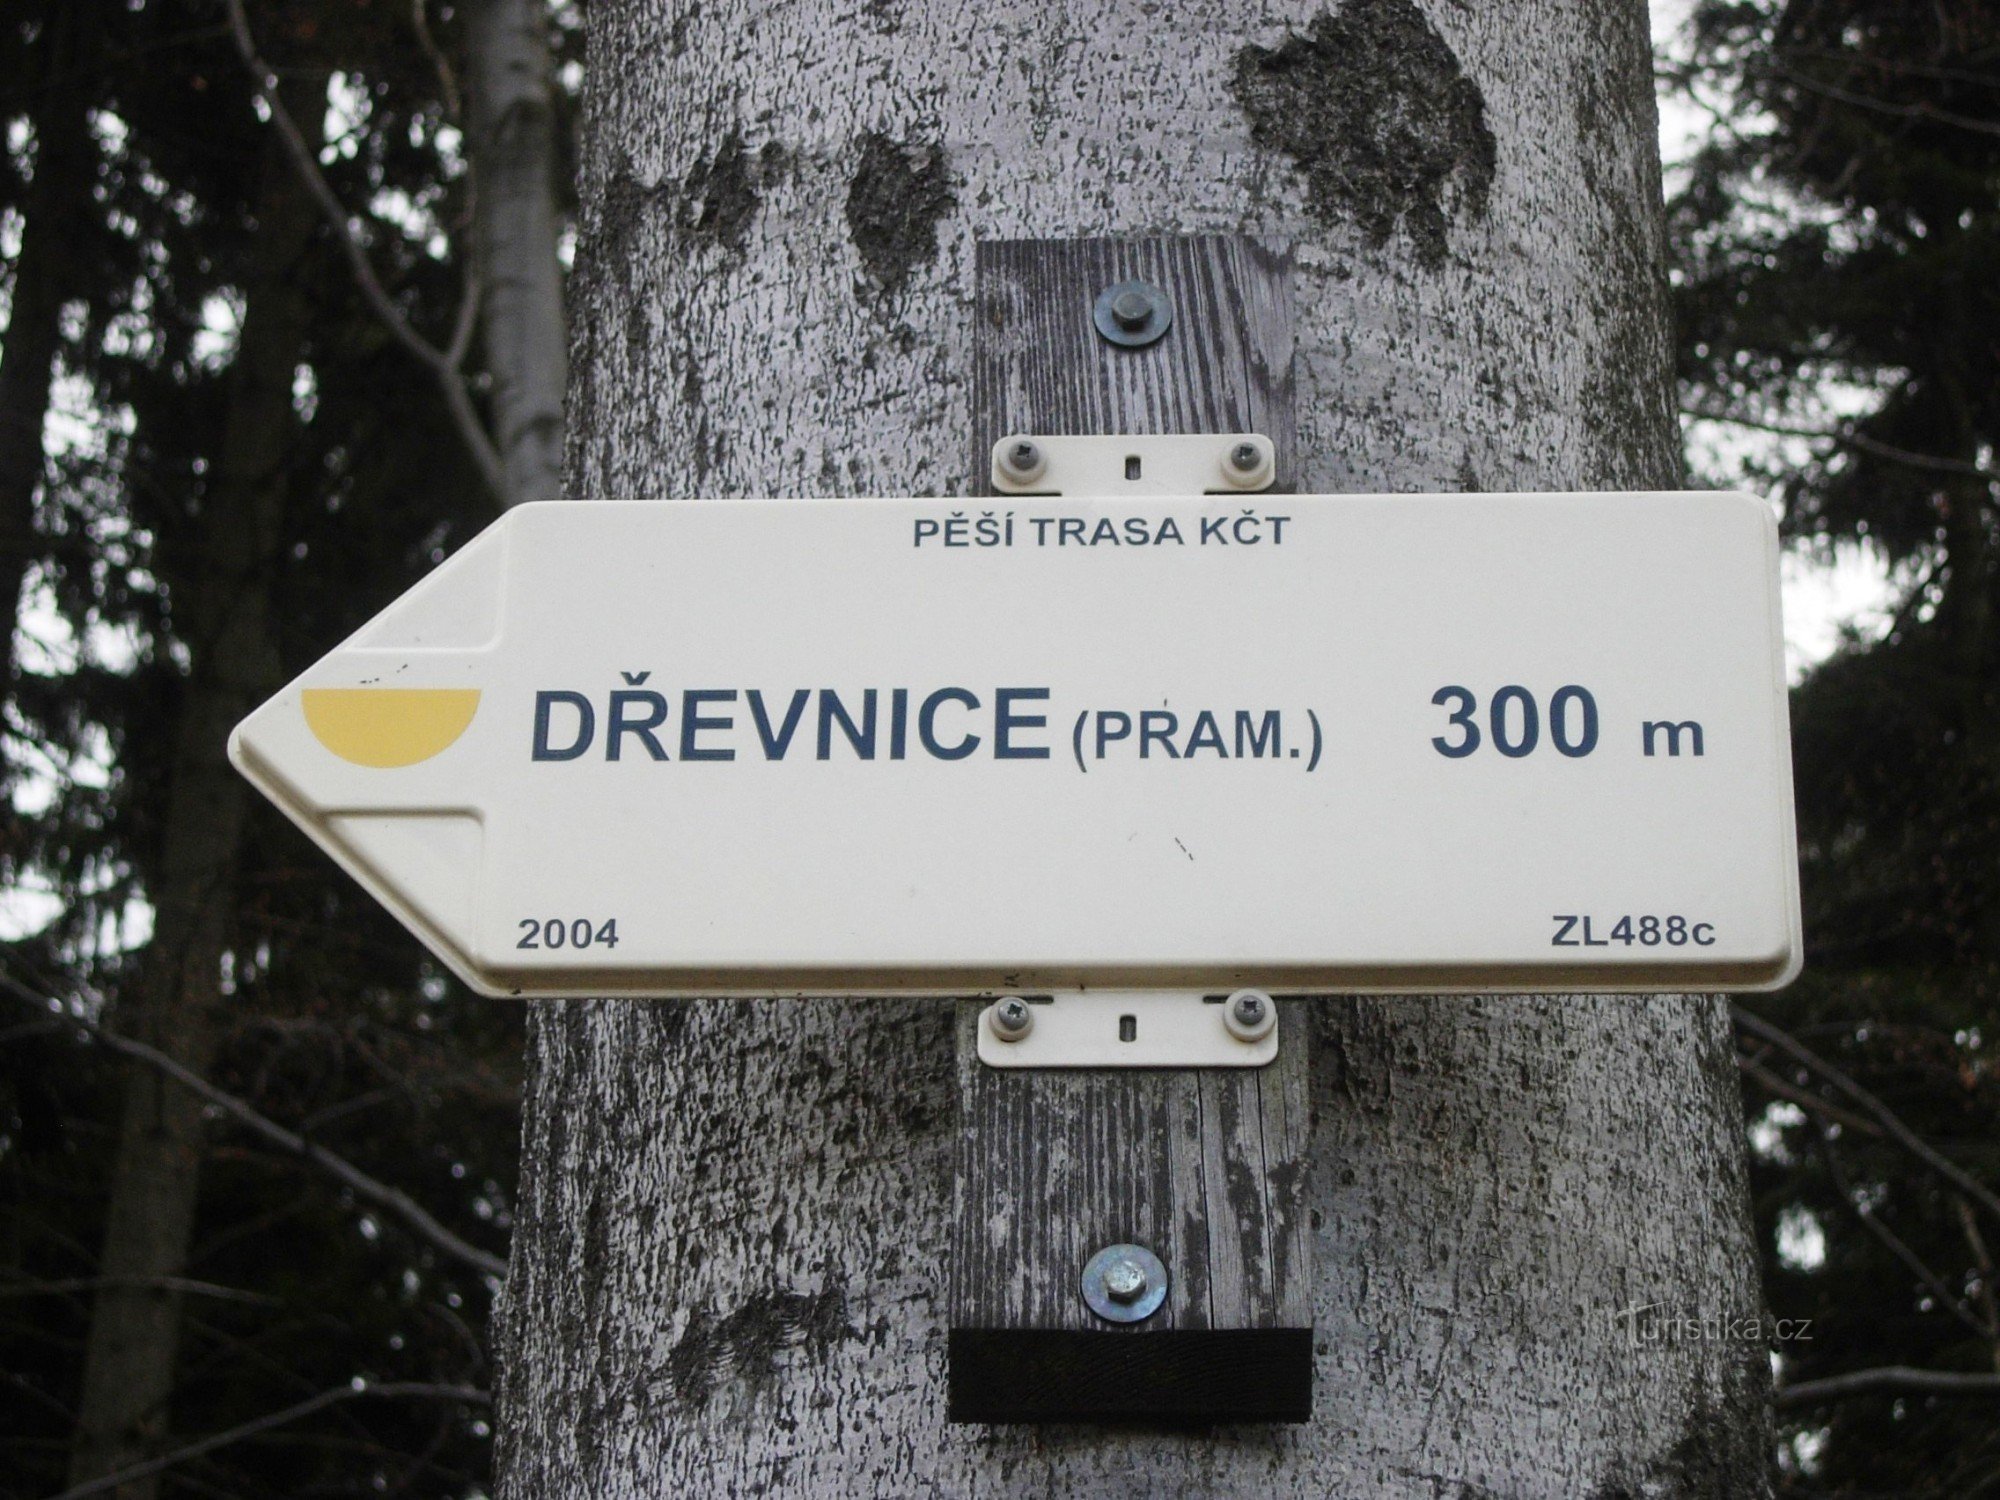 Wegwijzer naar de Dřevnice-bron